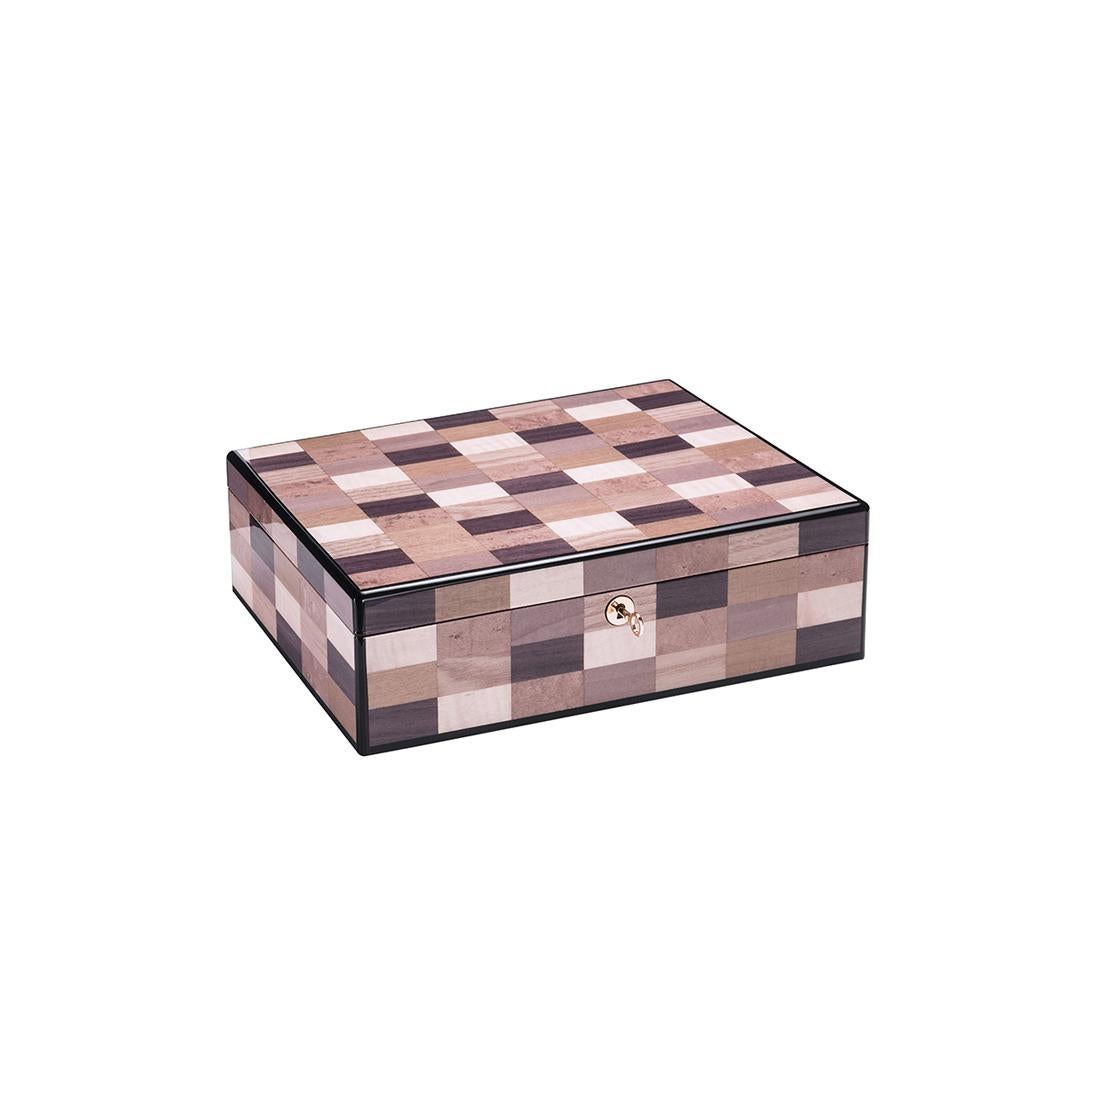 Cette boîte rectangulaire, à la fois élégante et pratique, convient parfaitement à la conservation d'objets précieux. Elle ajoutera une touche de sophistication à un bureau, à une console ou à une table de nuit. Fabriqué de main de maître en bois